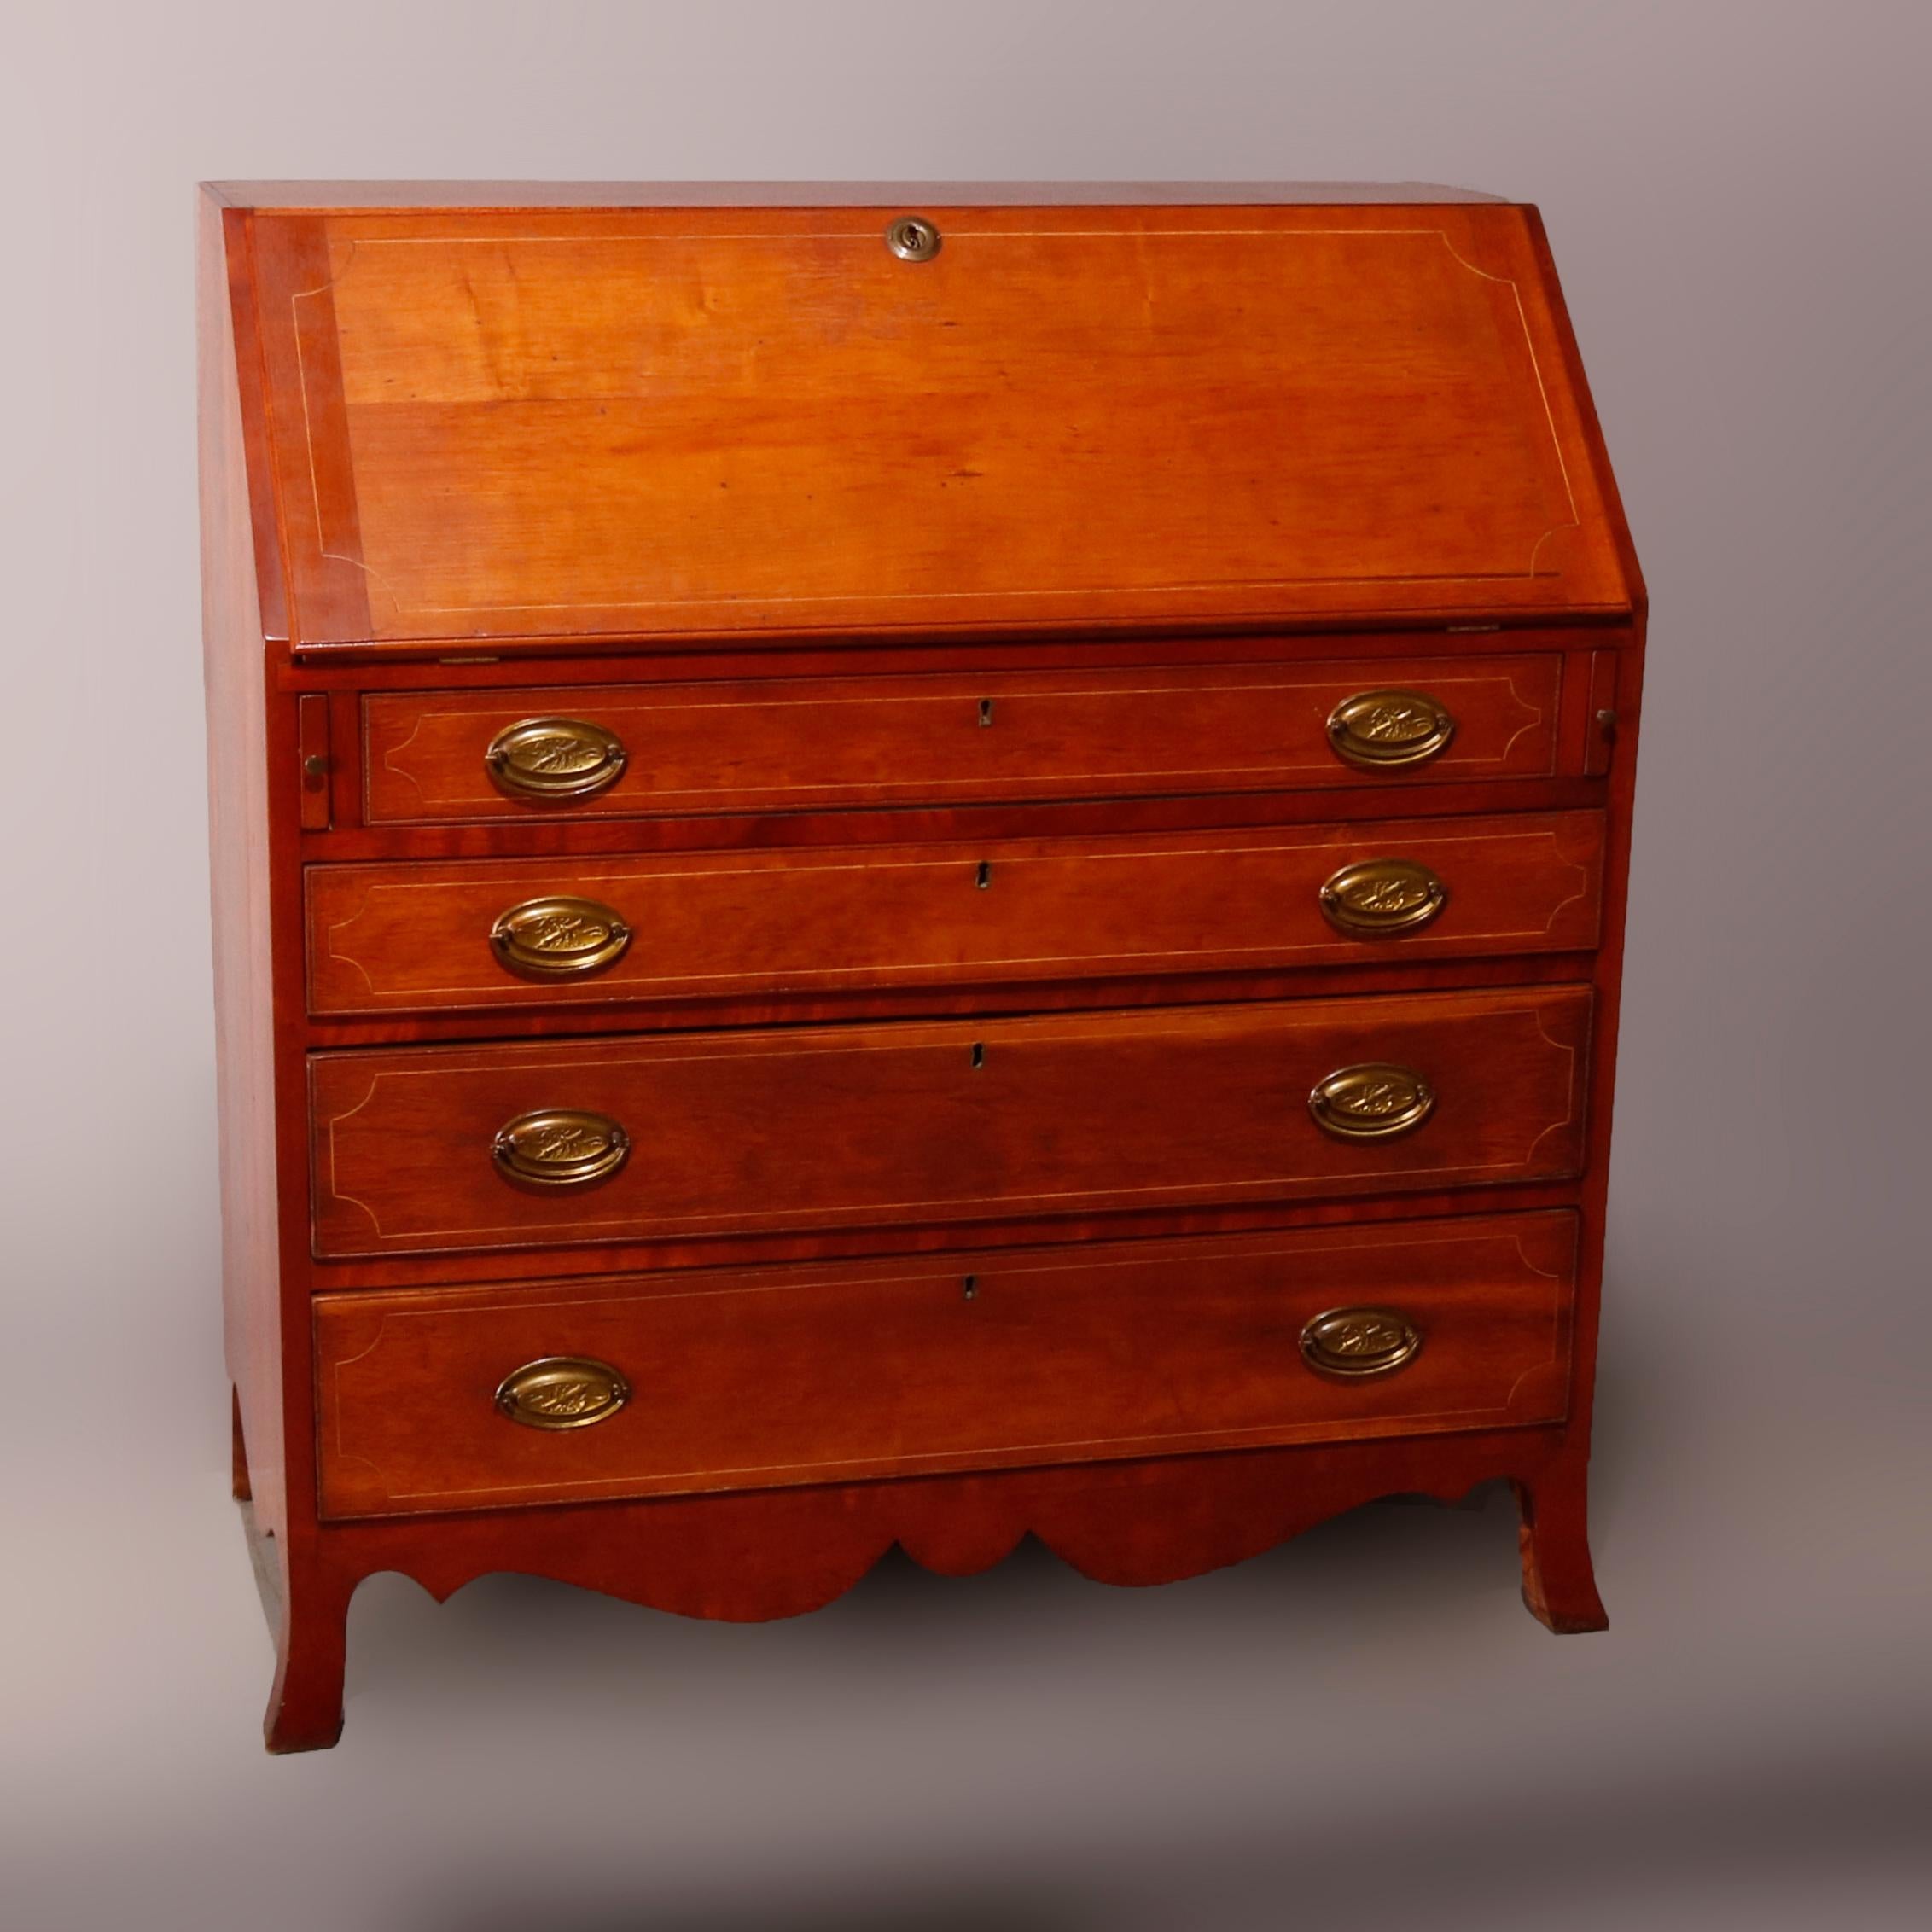 Antique English Hepplewhite Style Satinwood Banded Cherry Slant Front Desk 1